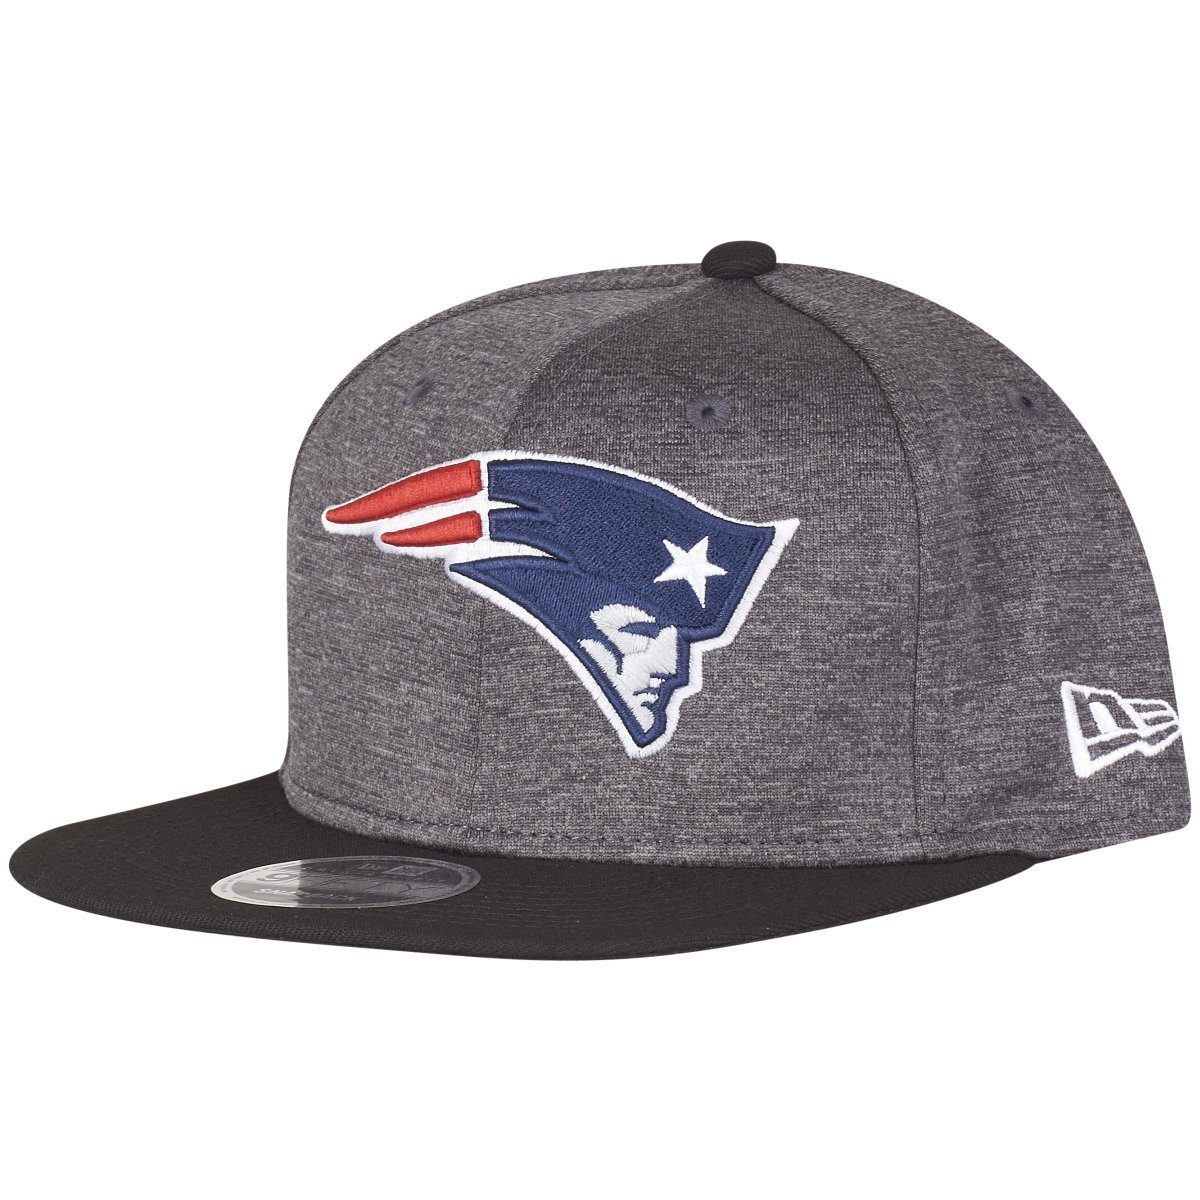 New Era Snapback Cap OriginalFit TECH New England Patriots